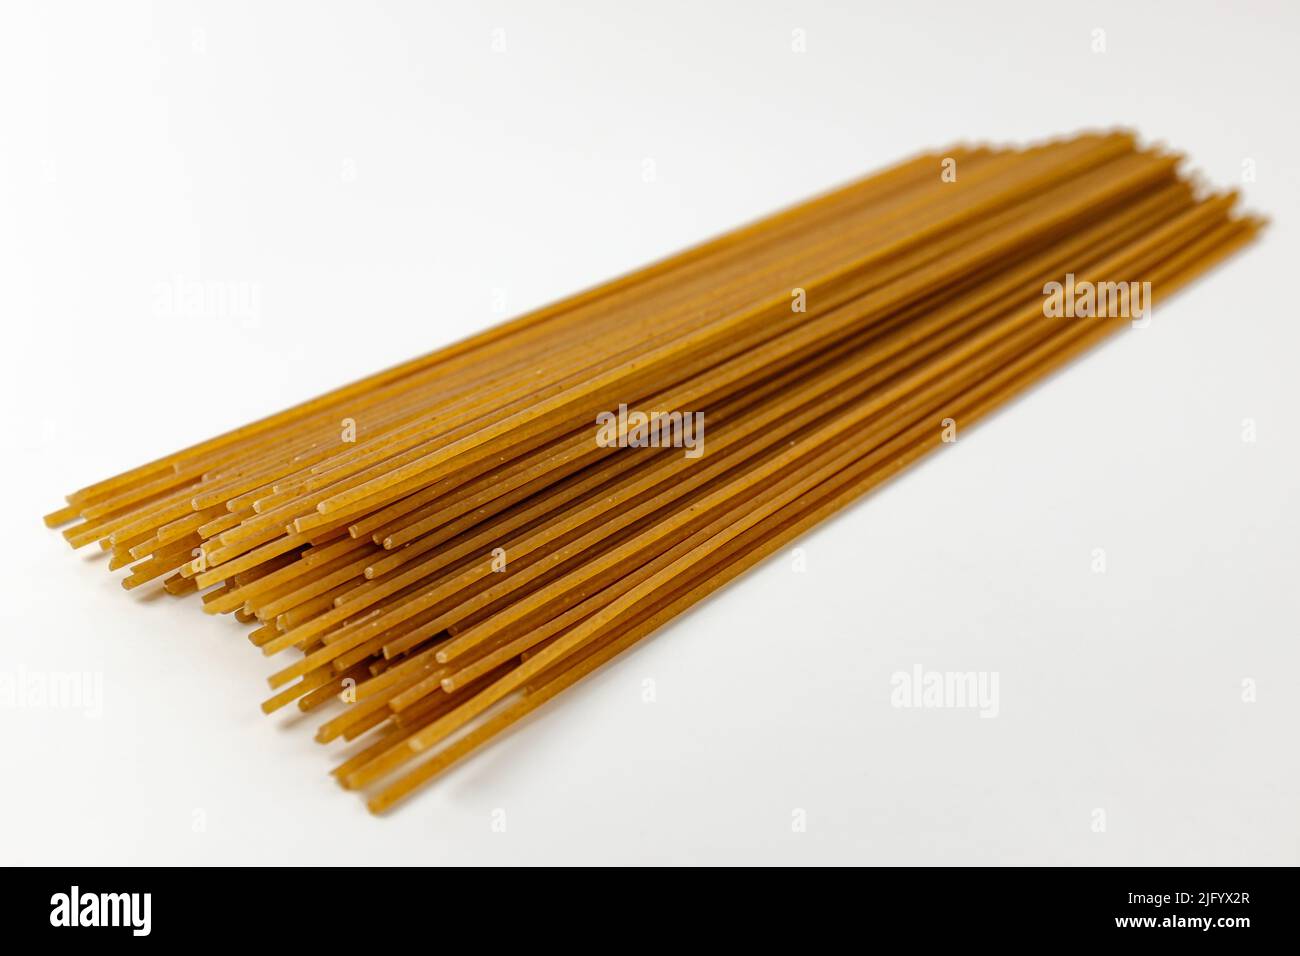 Spaghetti de blé entier sur fond blanc Banque D'Images